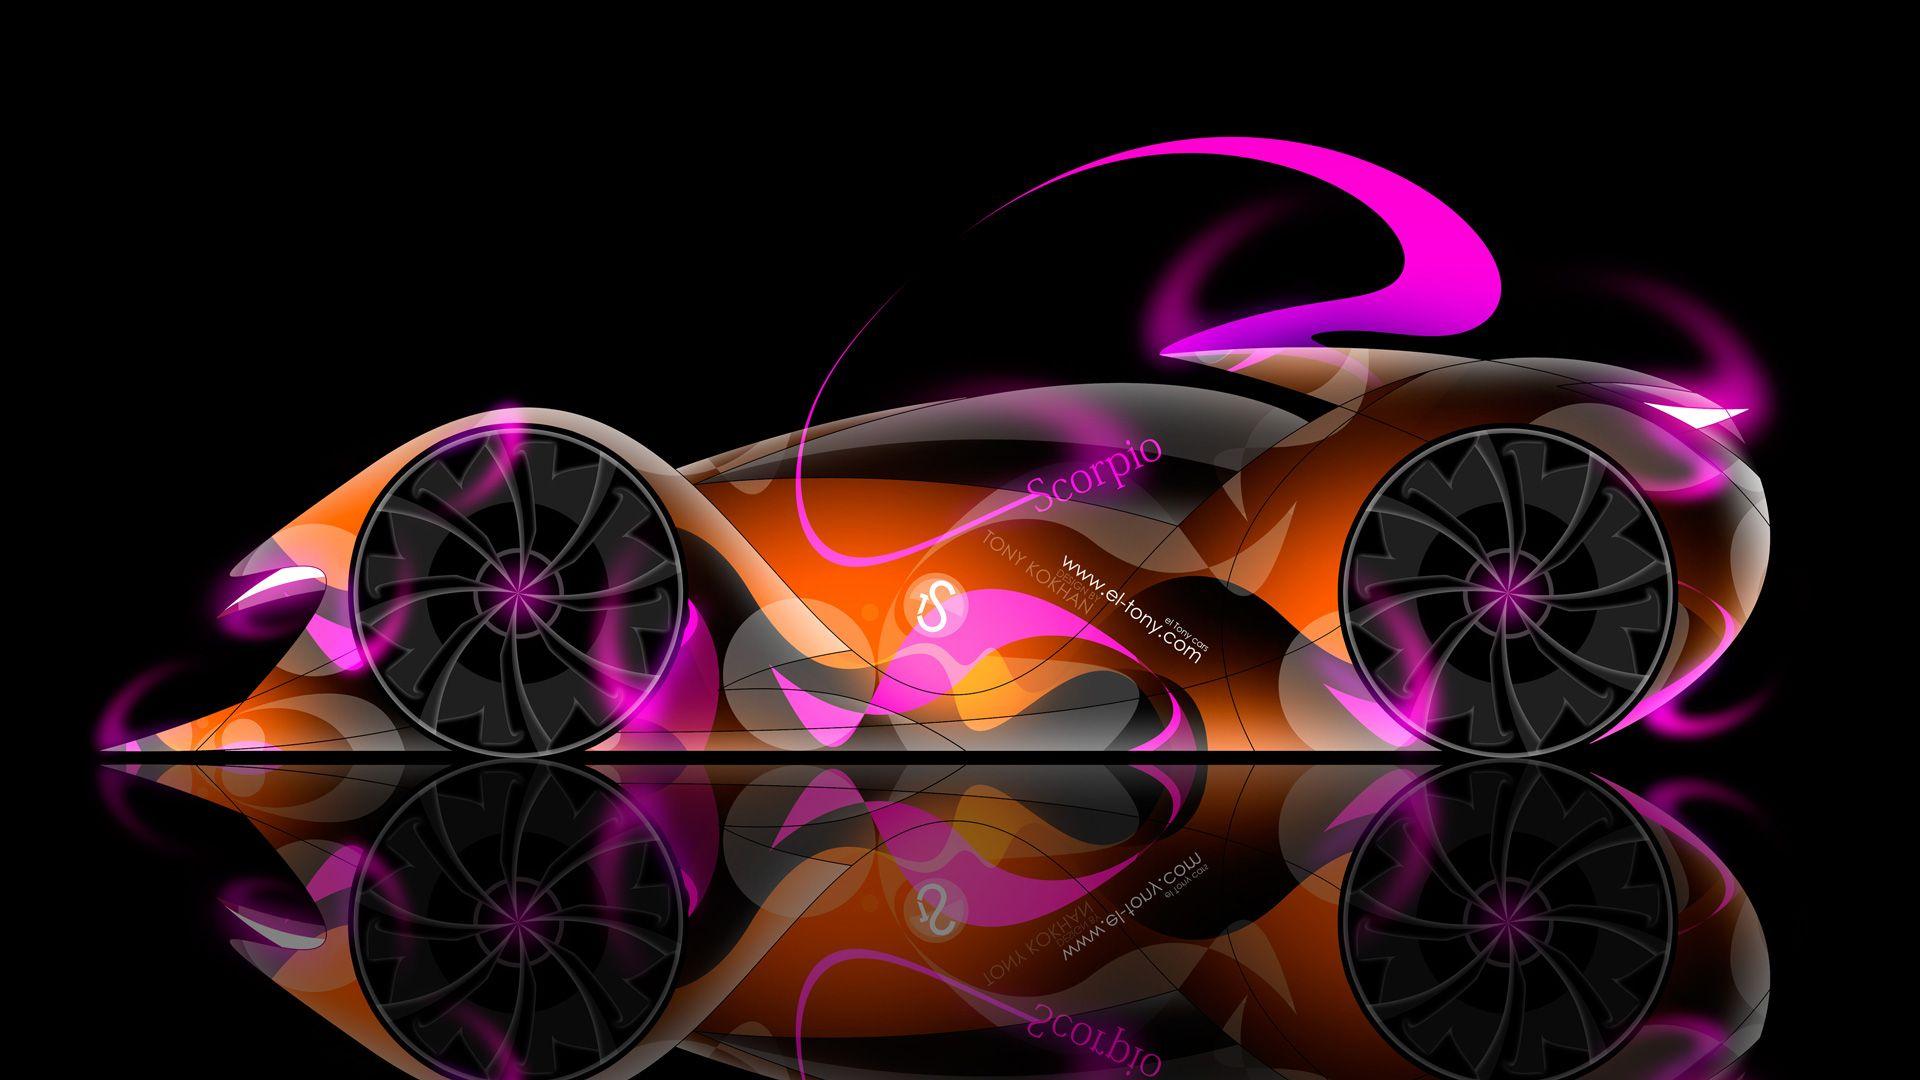 TS Scorpio Neon Car 2014